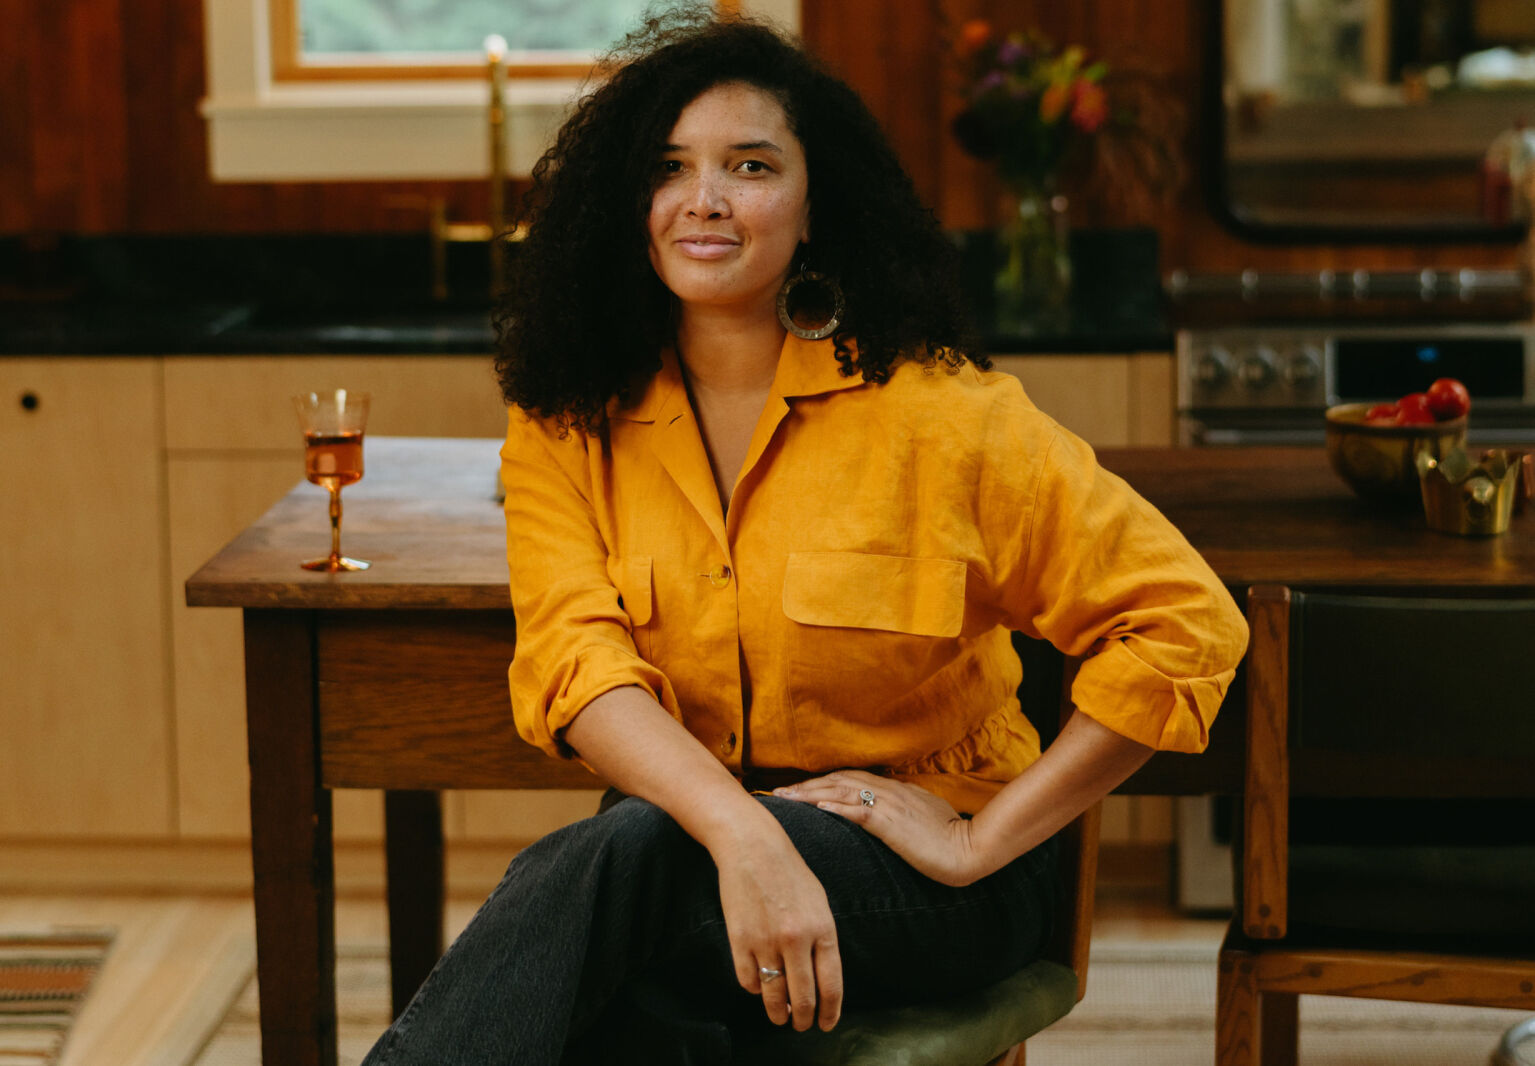 designer raisa sandrom in her own kitchen cara totman photo crop